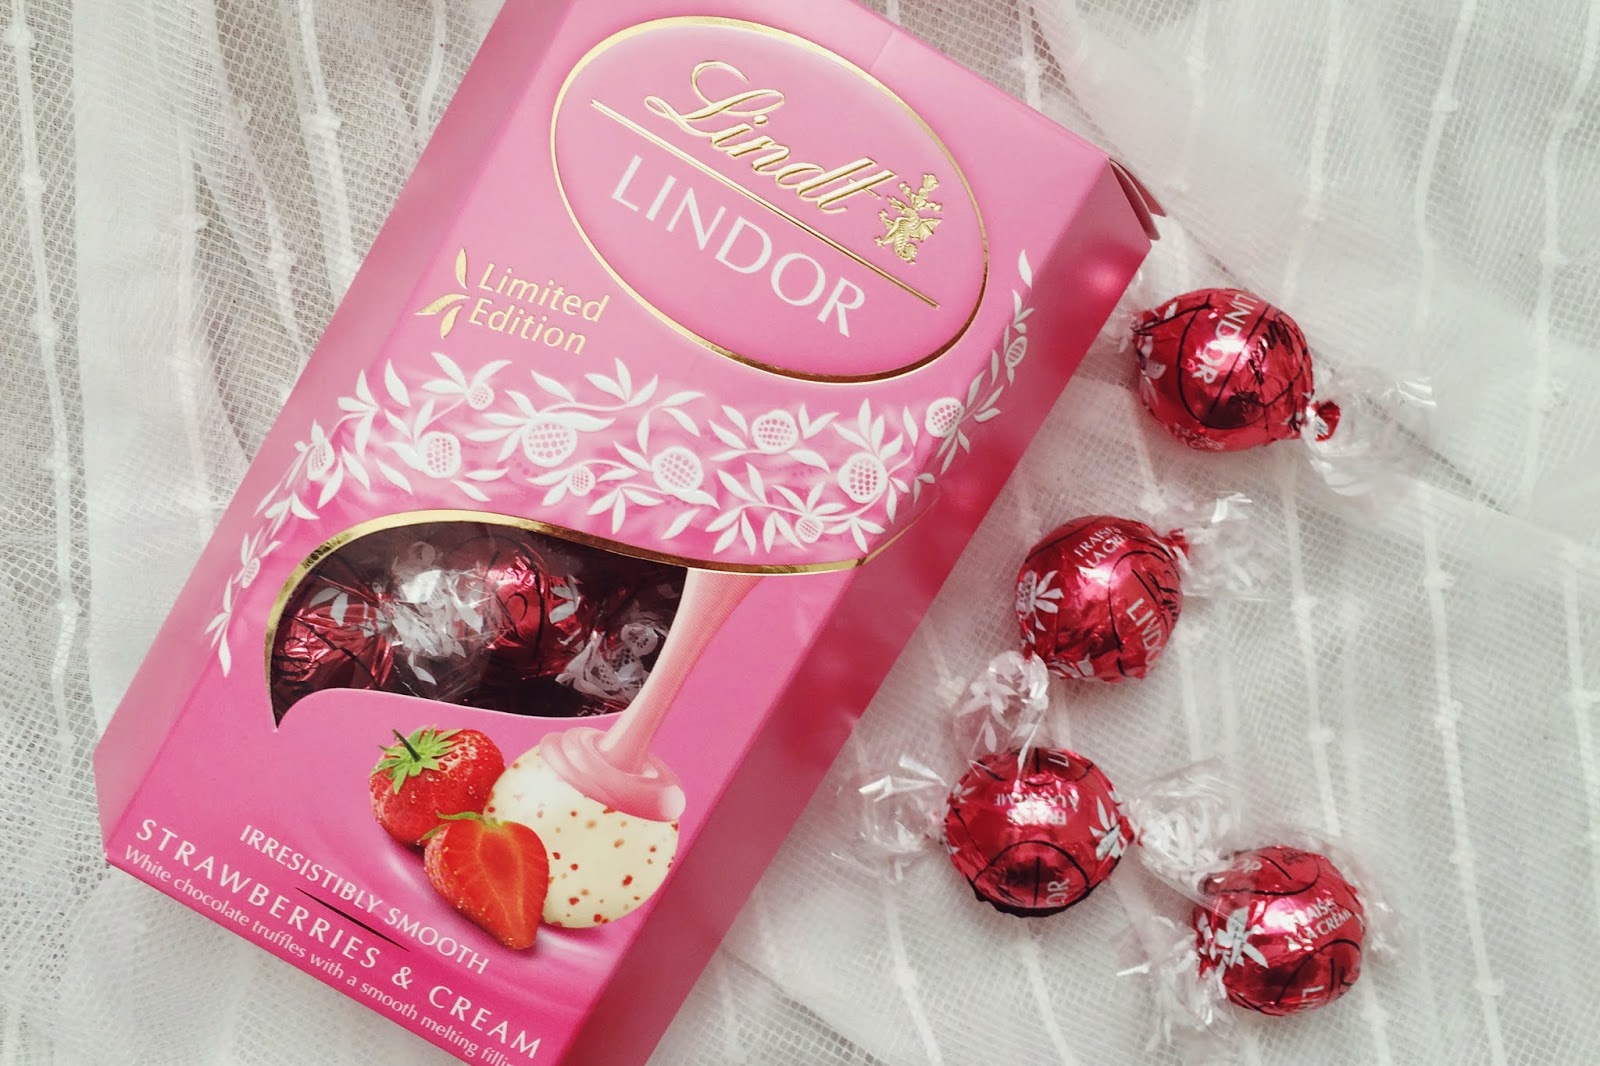 FashionFake, Valentines Day gift guide blog, UK lifestyle bloggers, UK food bloggers, Lindt chocolates, Lindor chocolates